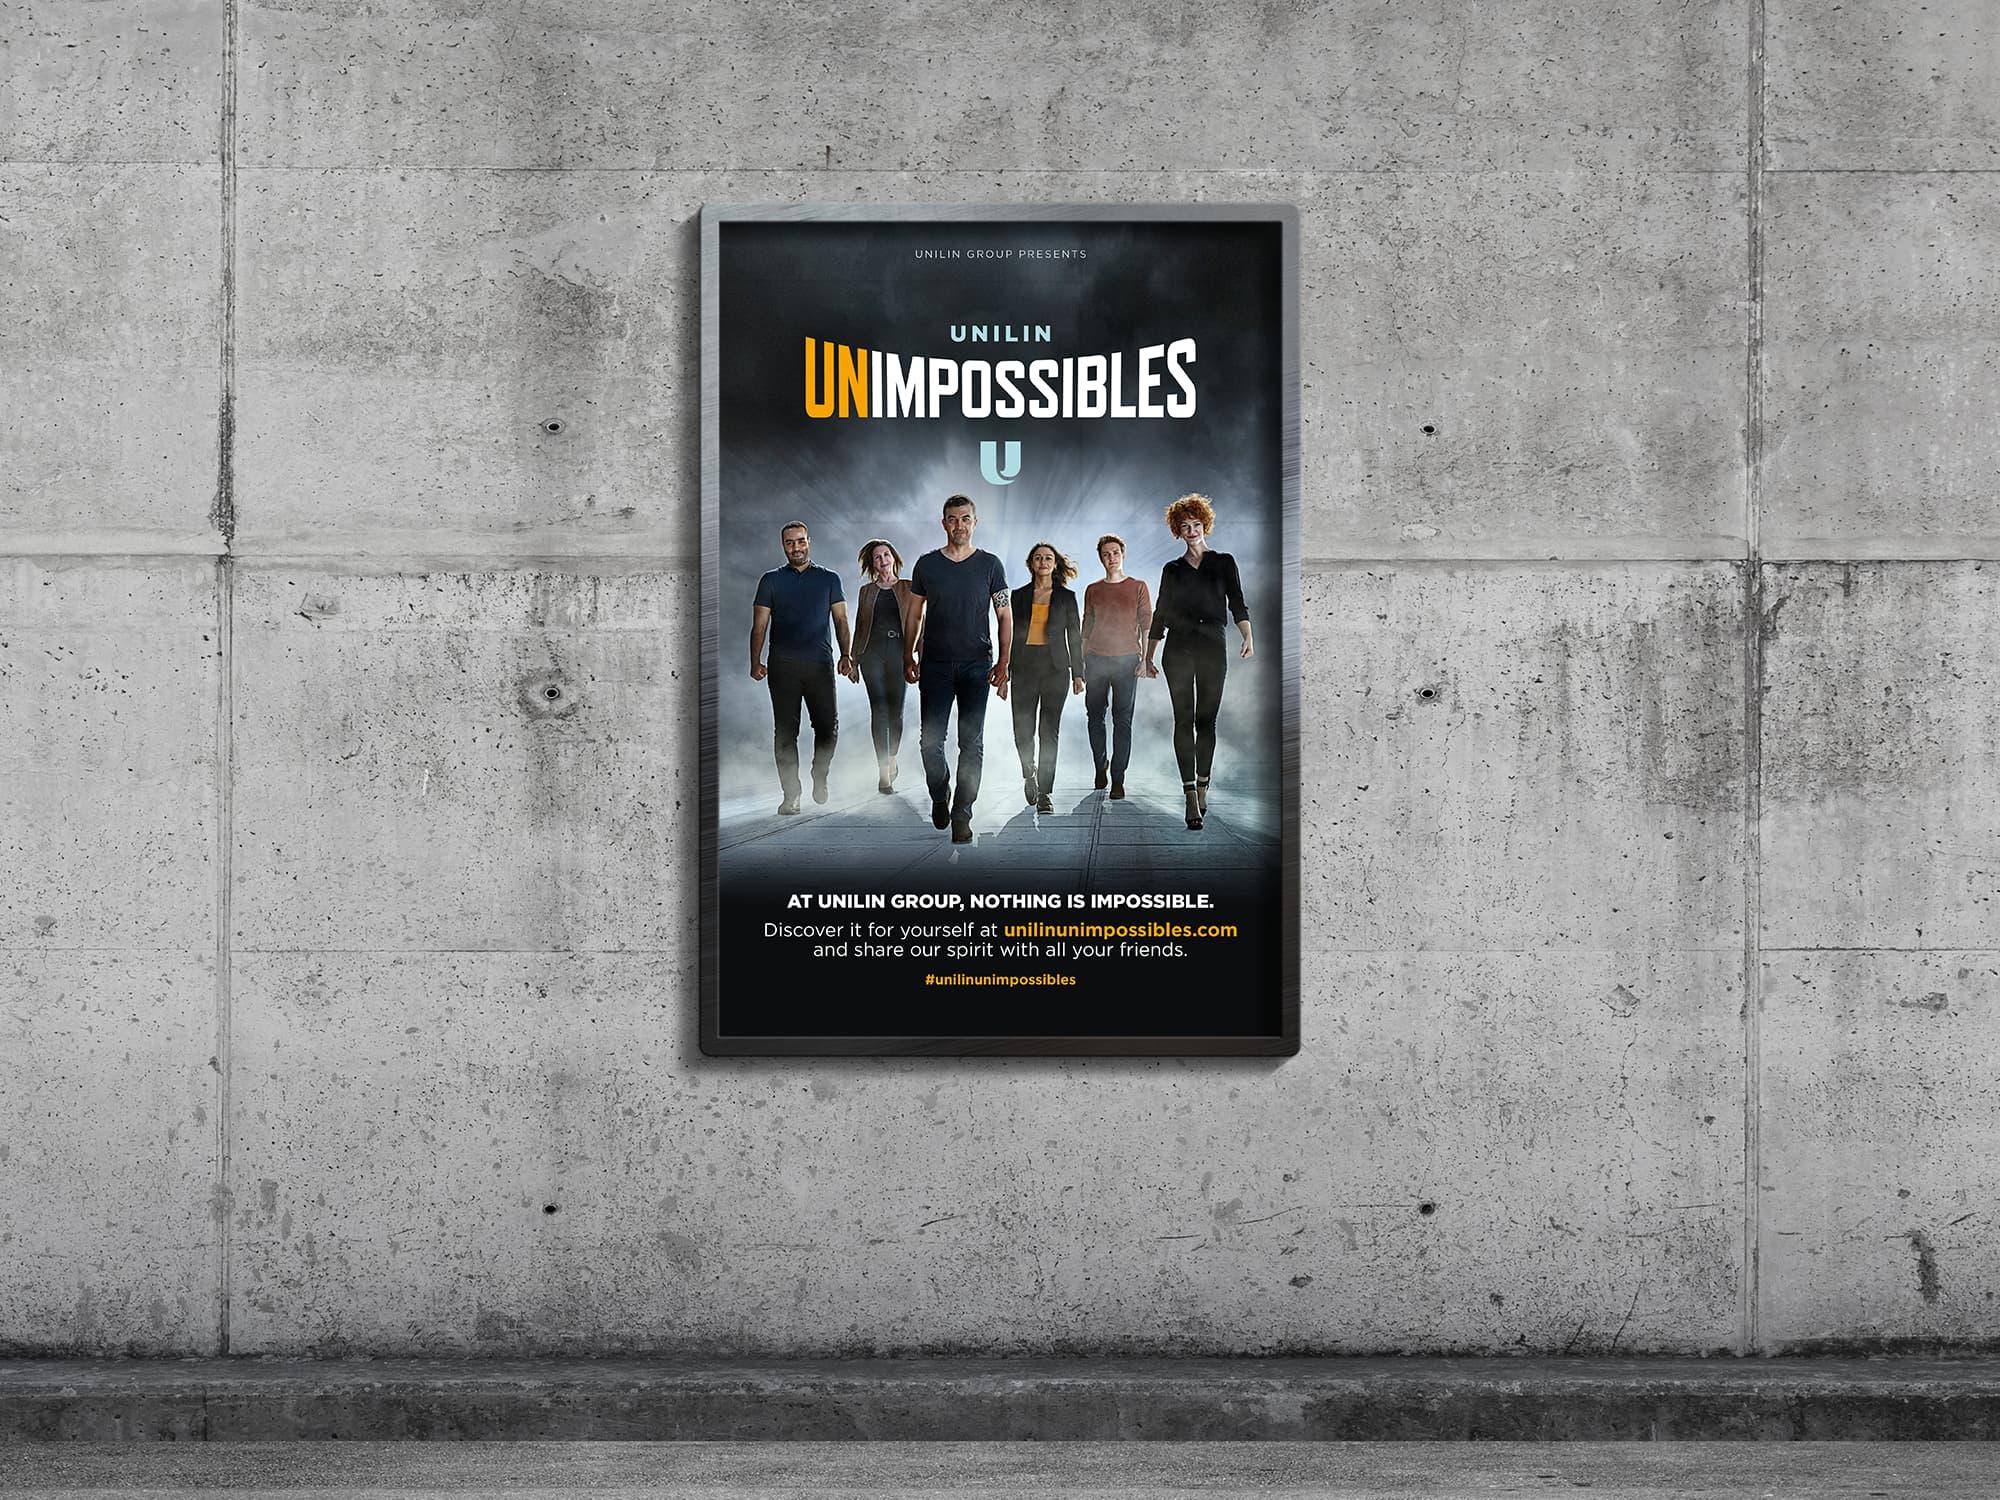 Campagnebeelden van the Unimpossibles van Unilin als affiche 